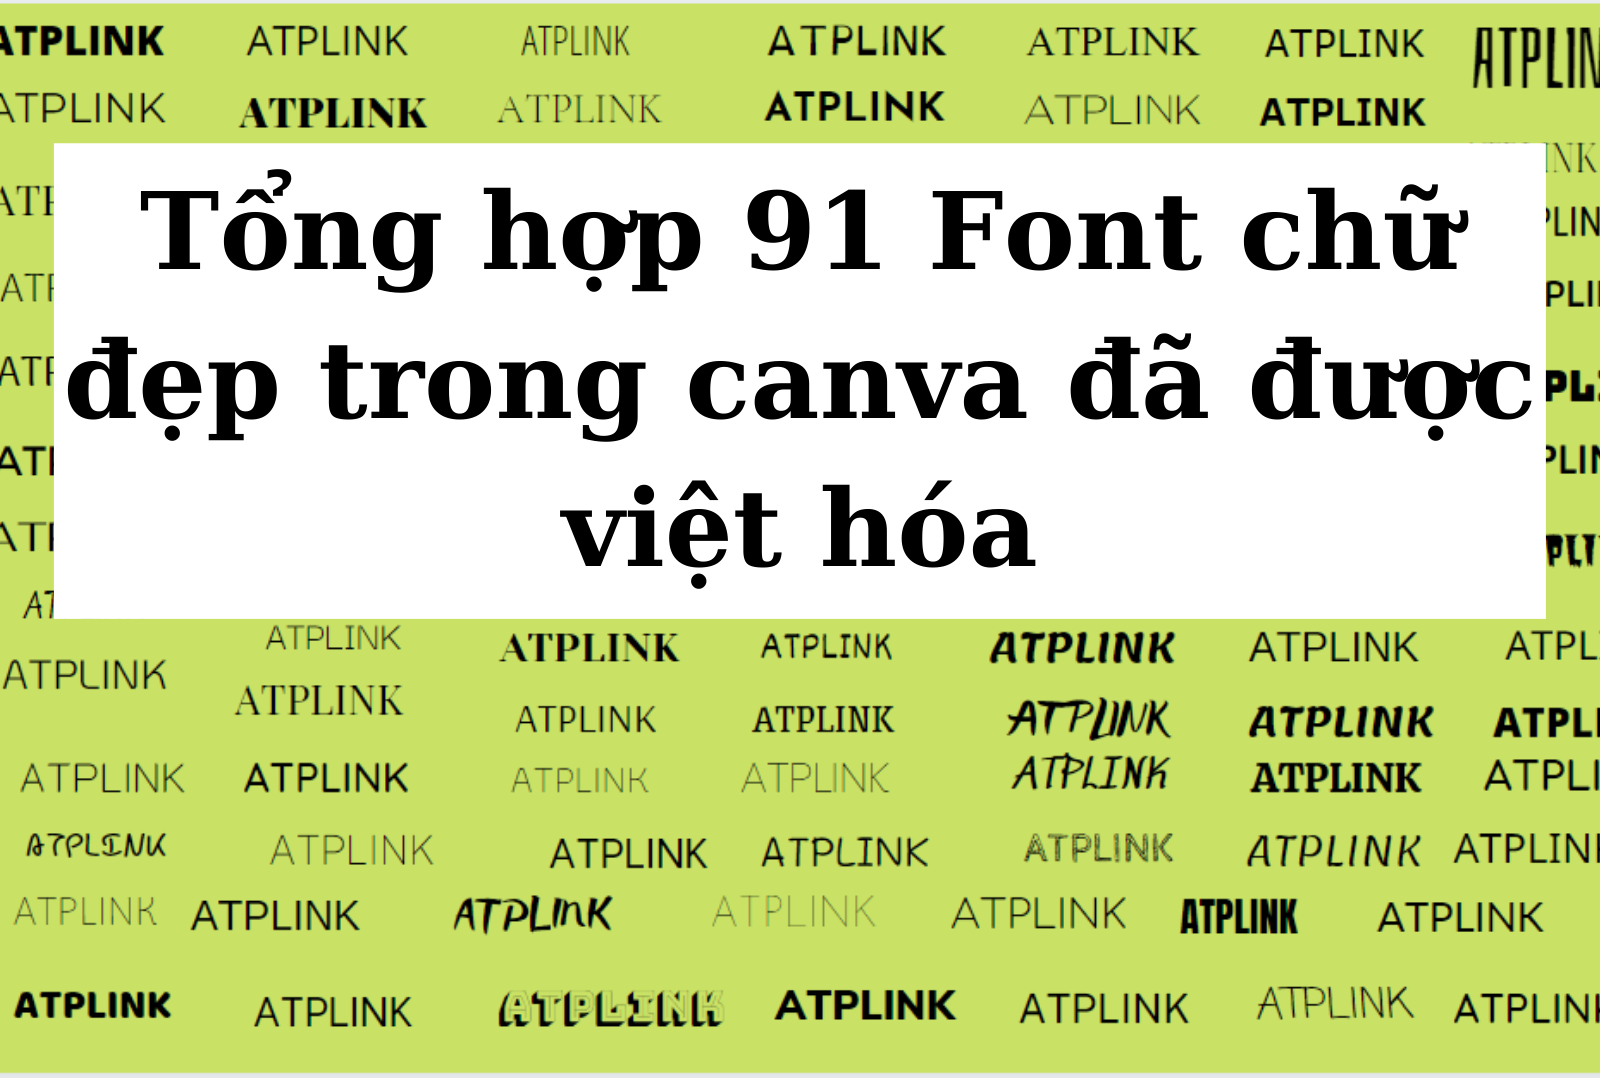 Font chữ tiếng Việt:  Chúc mừng các nhà thiết kế đã có thể sử dụng các font chữ tiếng Việt đang được cập nhật hàng ngày đến từ đối tác tuyệt vời của chúng tôi. Thiết kế sử dụng font chữ tiếng Việt mới này sẽ mang lại cho những người dùng một trải nghiệm đáng kinh ngạc và giúp tăng tính ứng dụng của sản phẩm của bạn. Các tác phẩm của bạn sẽ không chỉ đơn giản là tuyệt vời mà còn là xu thế của thị trường thiết kế Việt Nam.